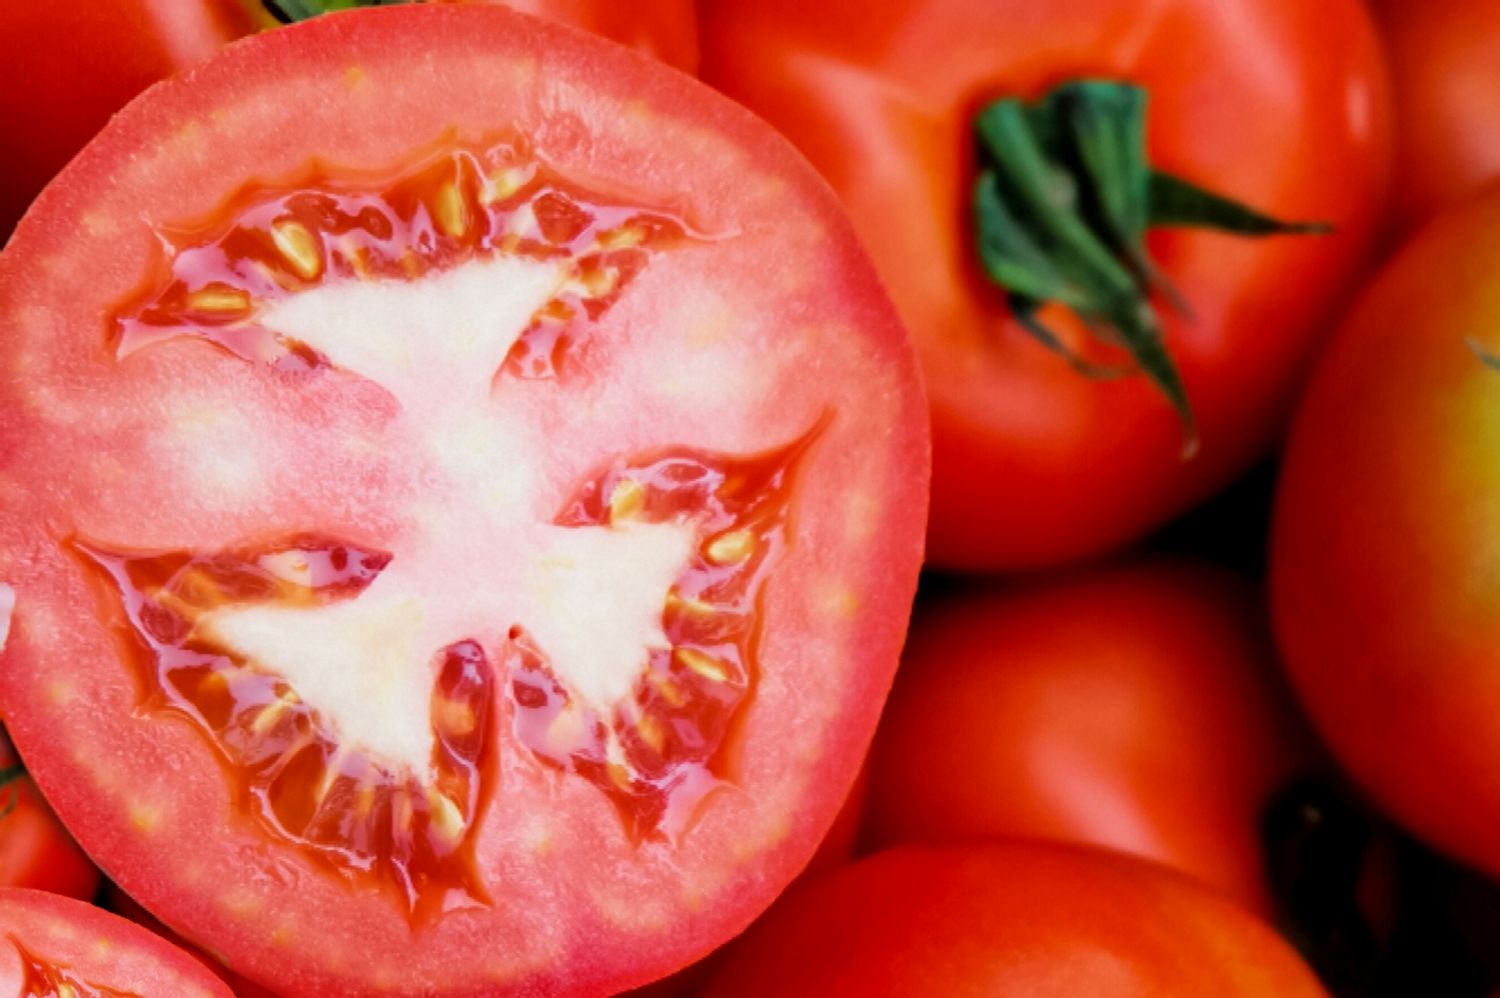 cortando o ombro do tomate